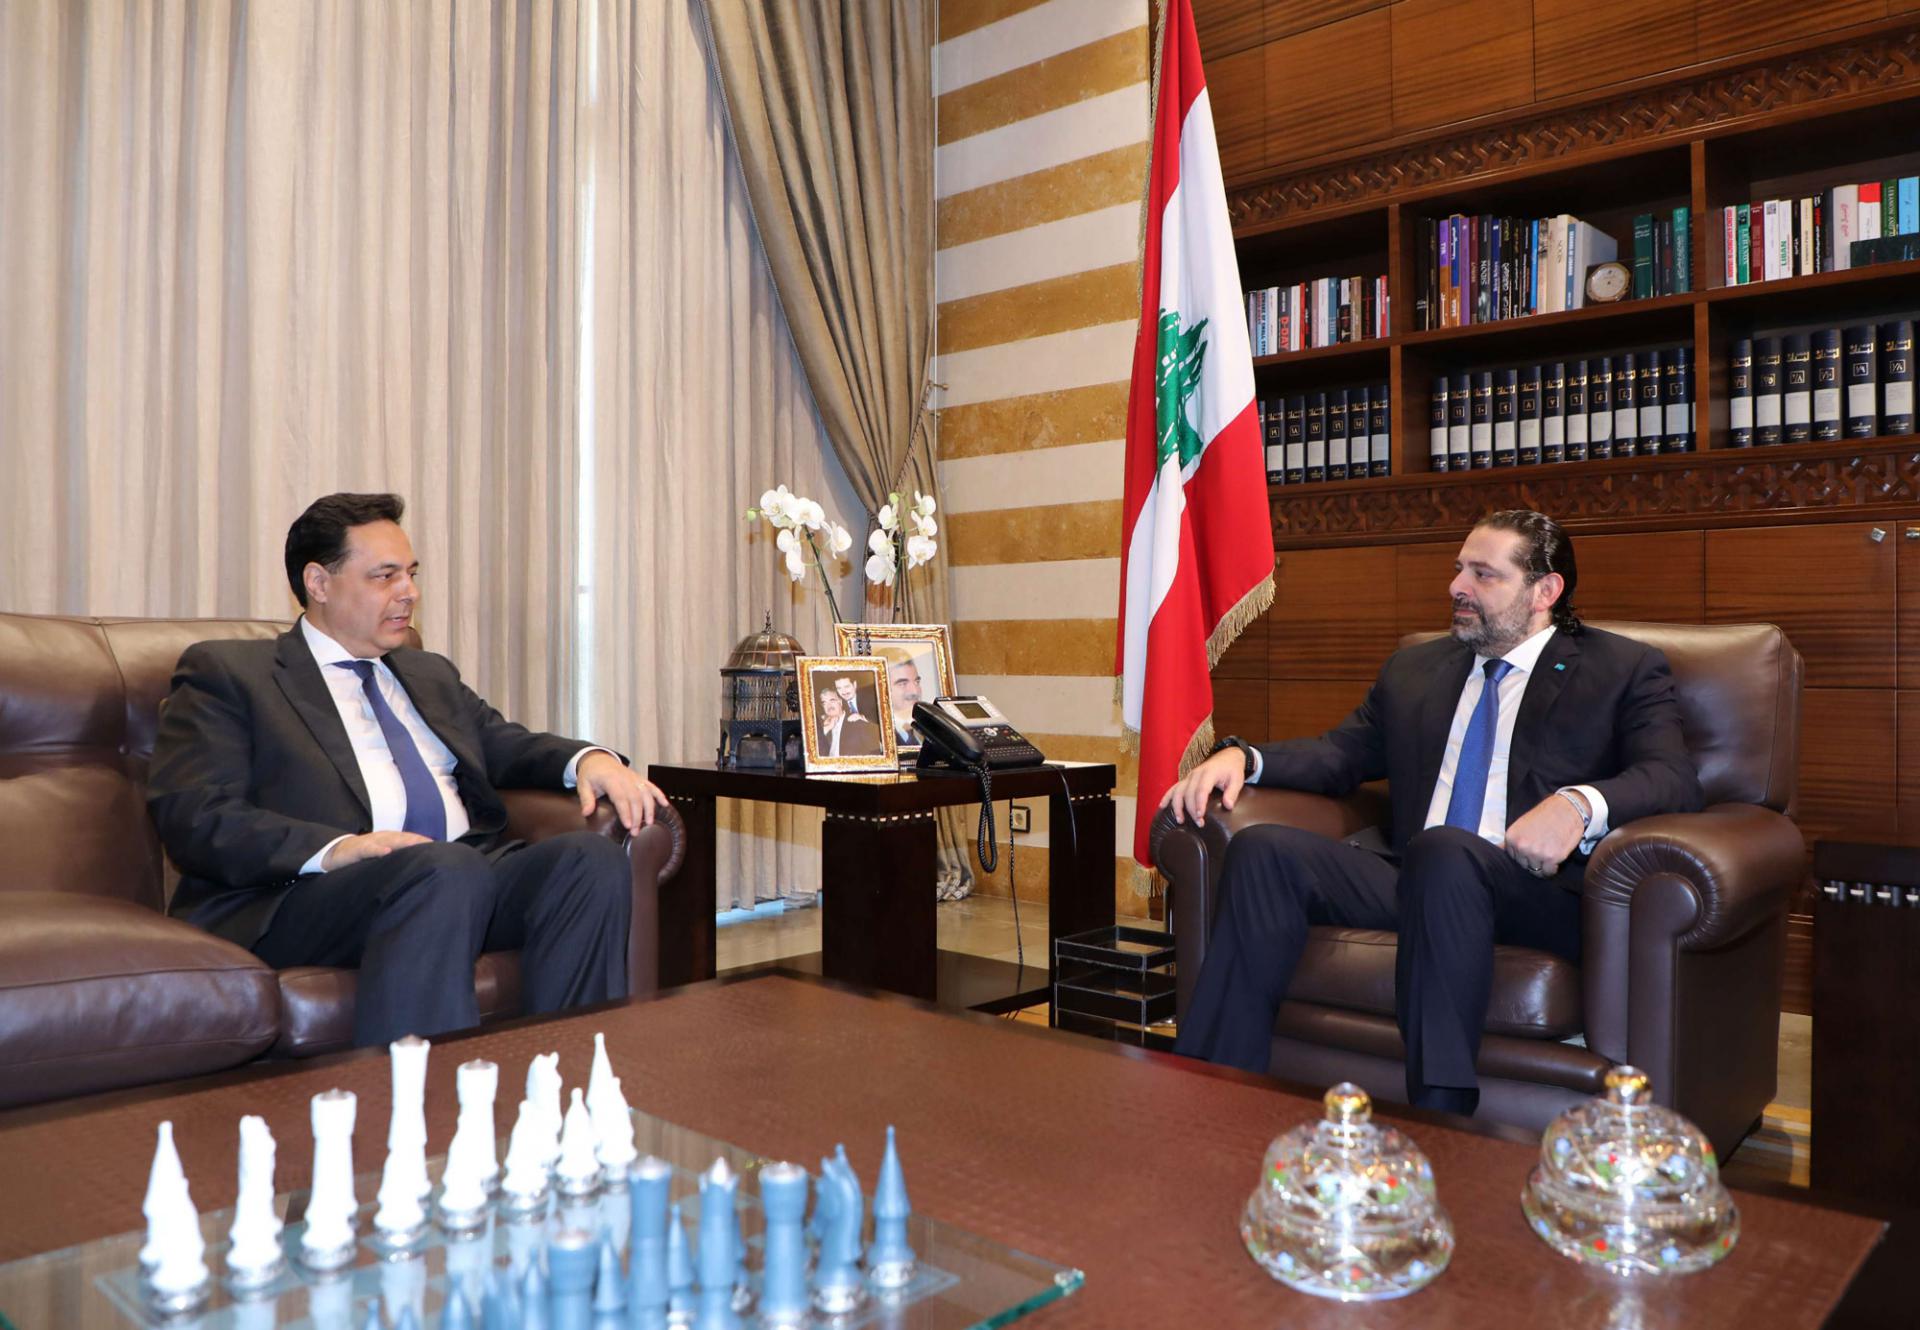 سعد الحريري (يمين) يلتقي المكلف بتشكيل حكومة في لبنان حسان دياب